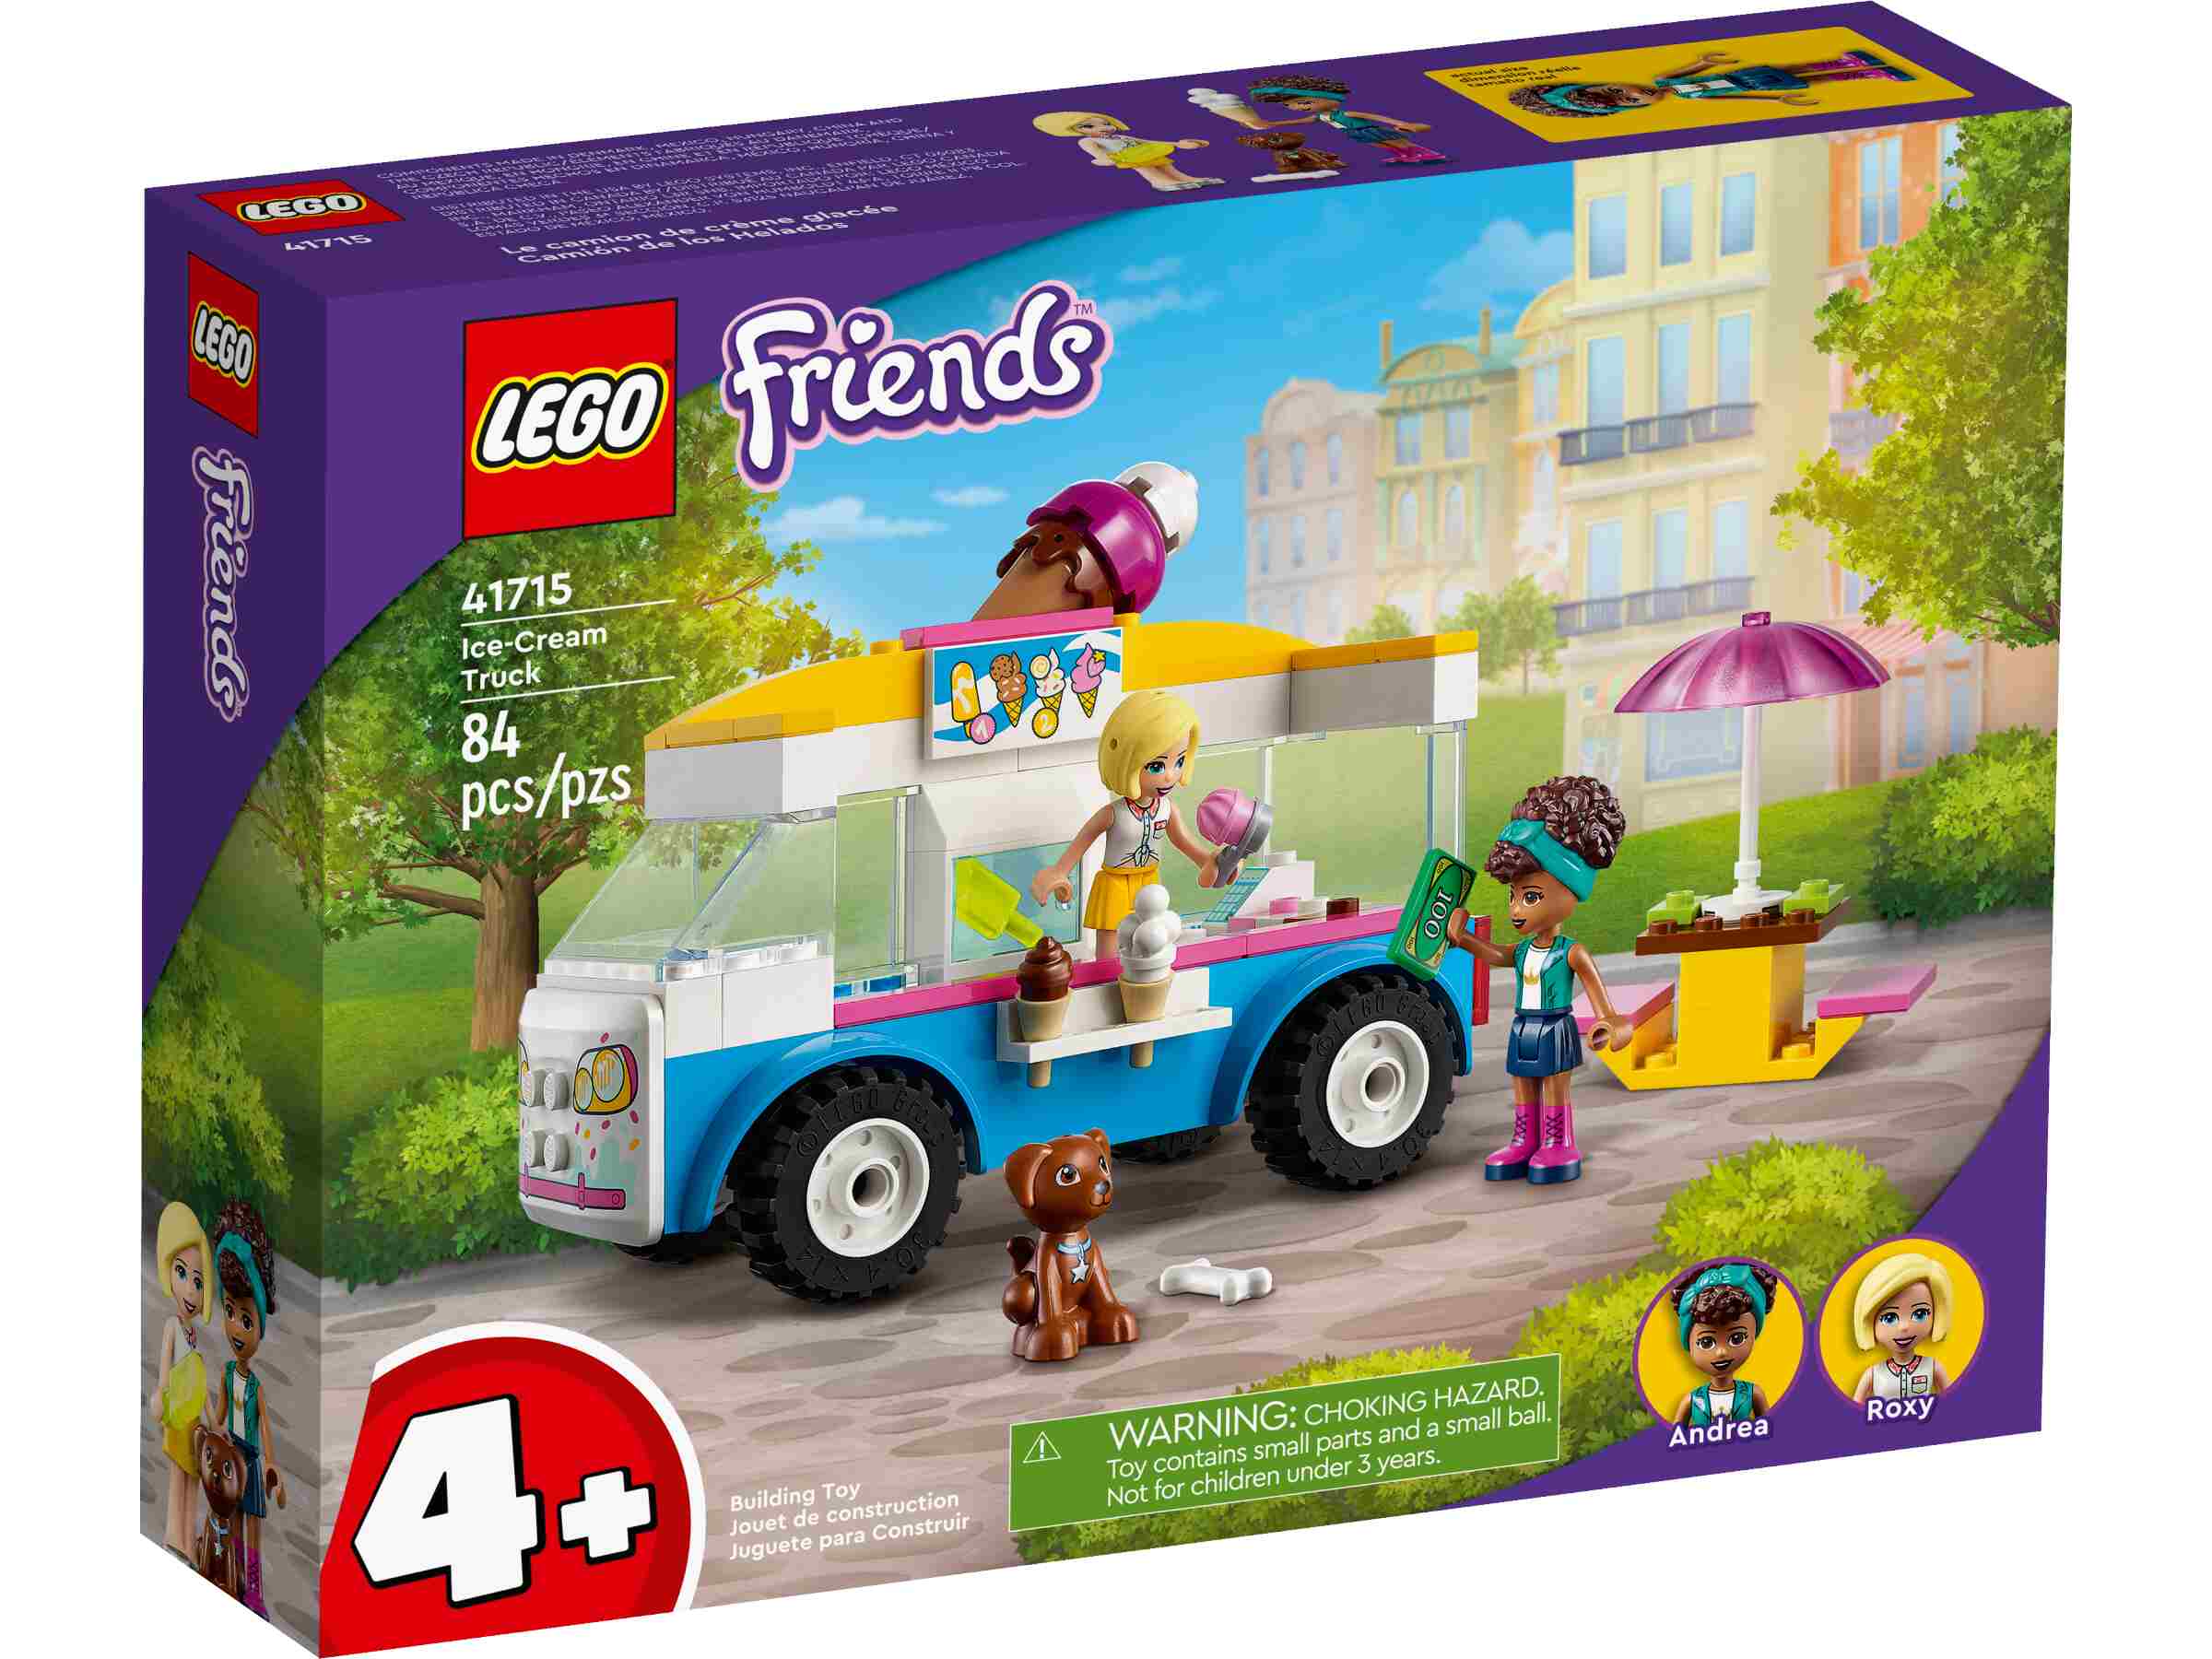 LEGO 41715 Friends Eiswagen mit Spielfiguren Andrea und Roxy sowie einen Hund